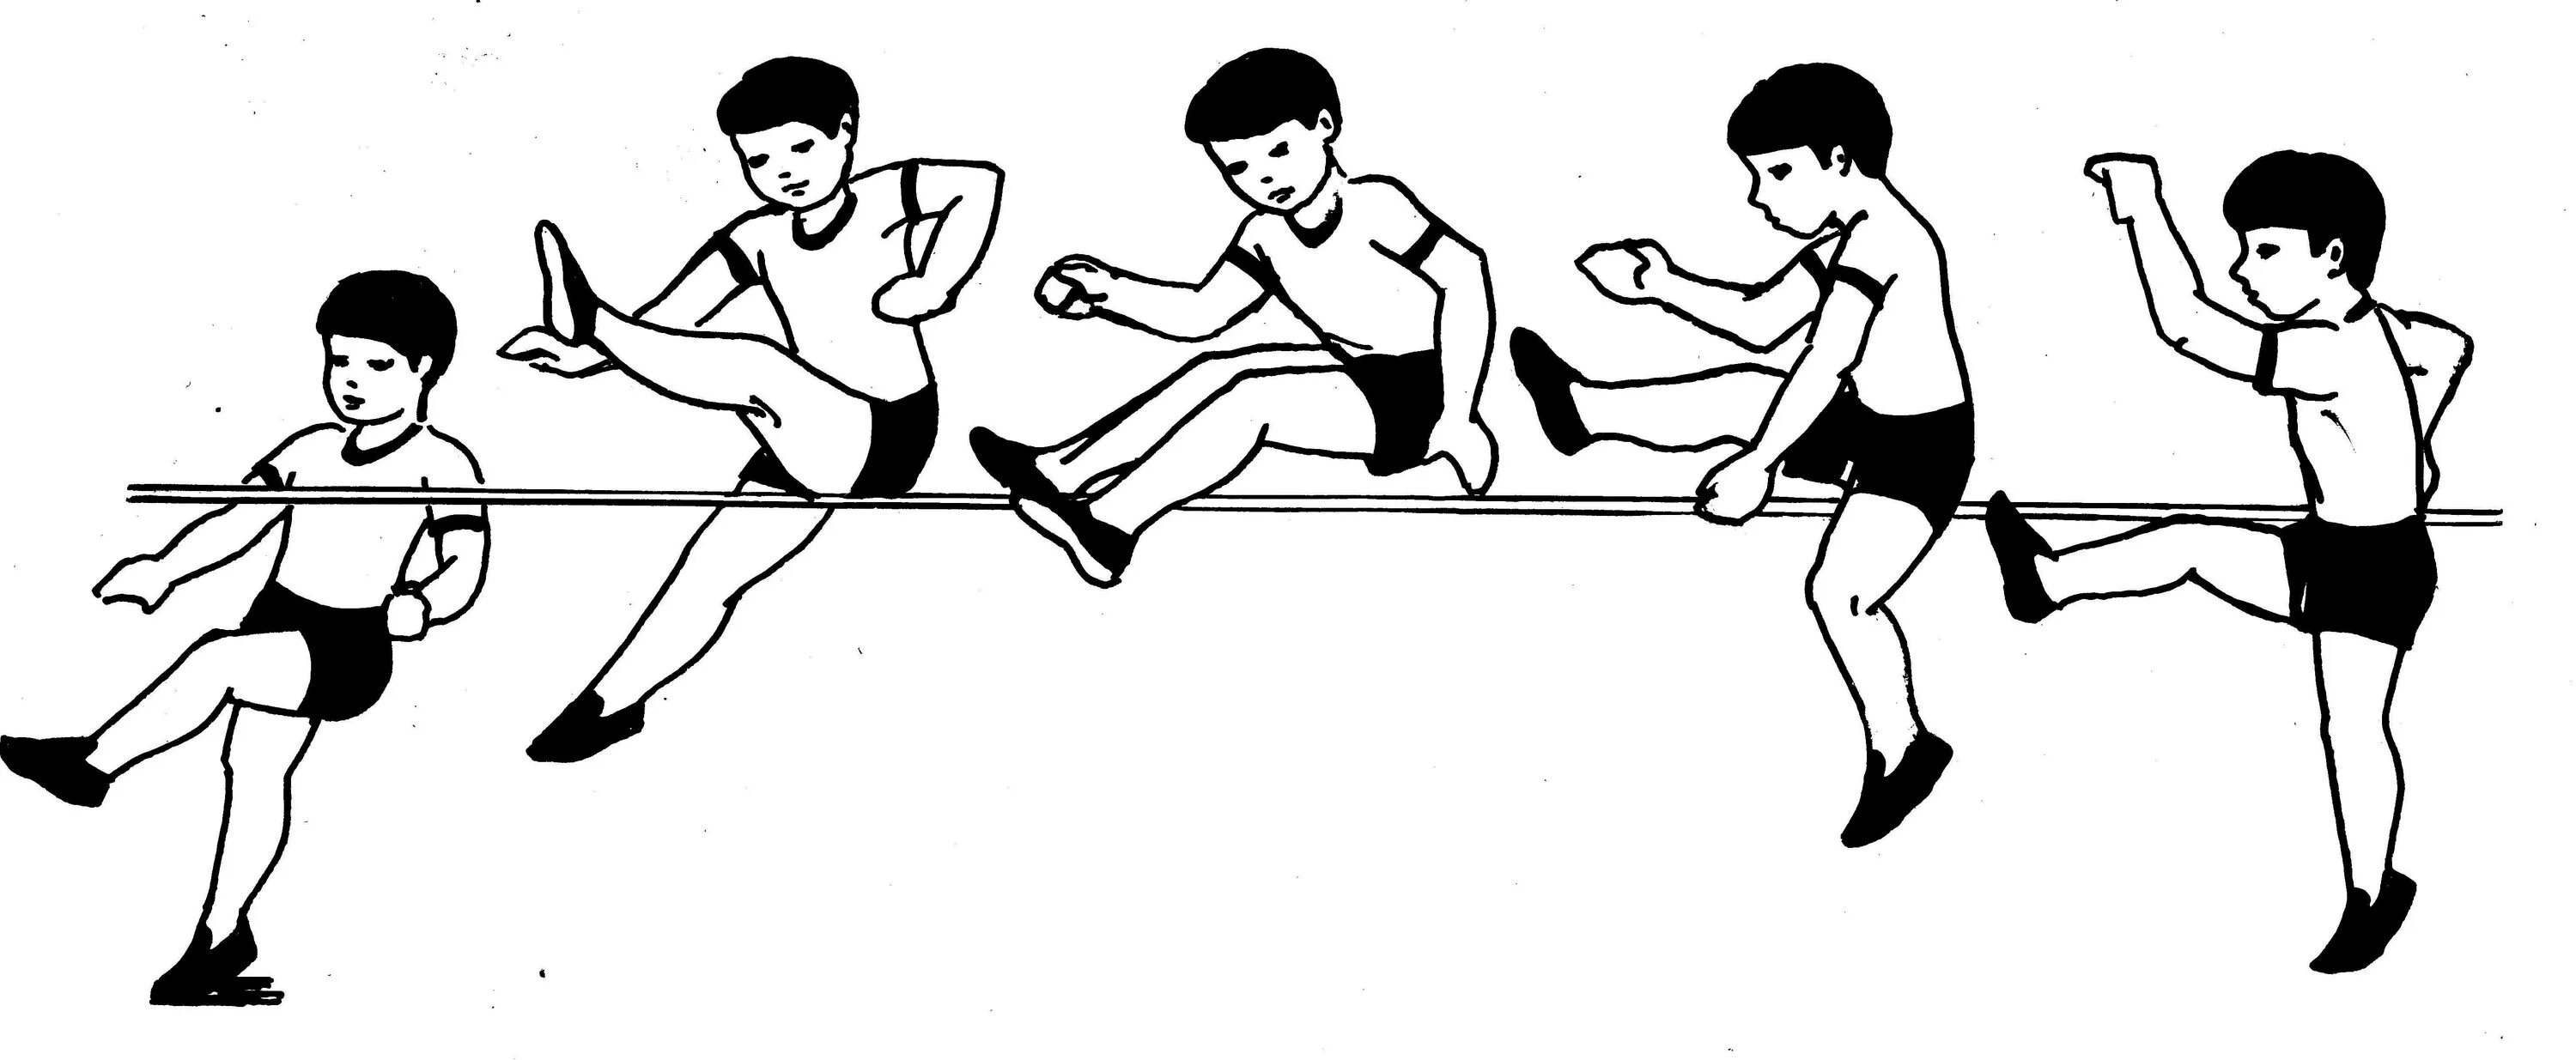 Обучение двигательным действиям и воспитание. Прыжки на месте рисунок. Физическая культура. Двигательные действия картинки. Прыжки в высоту с разбега места для детей.